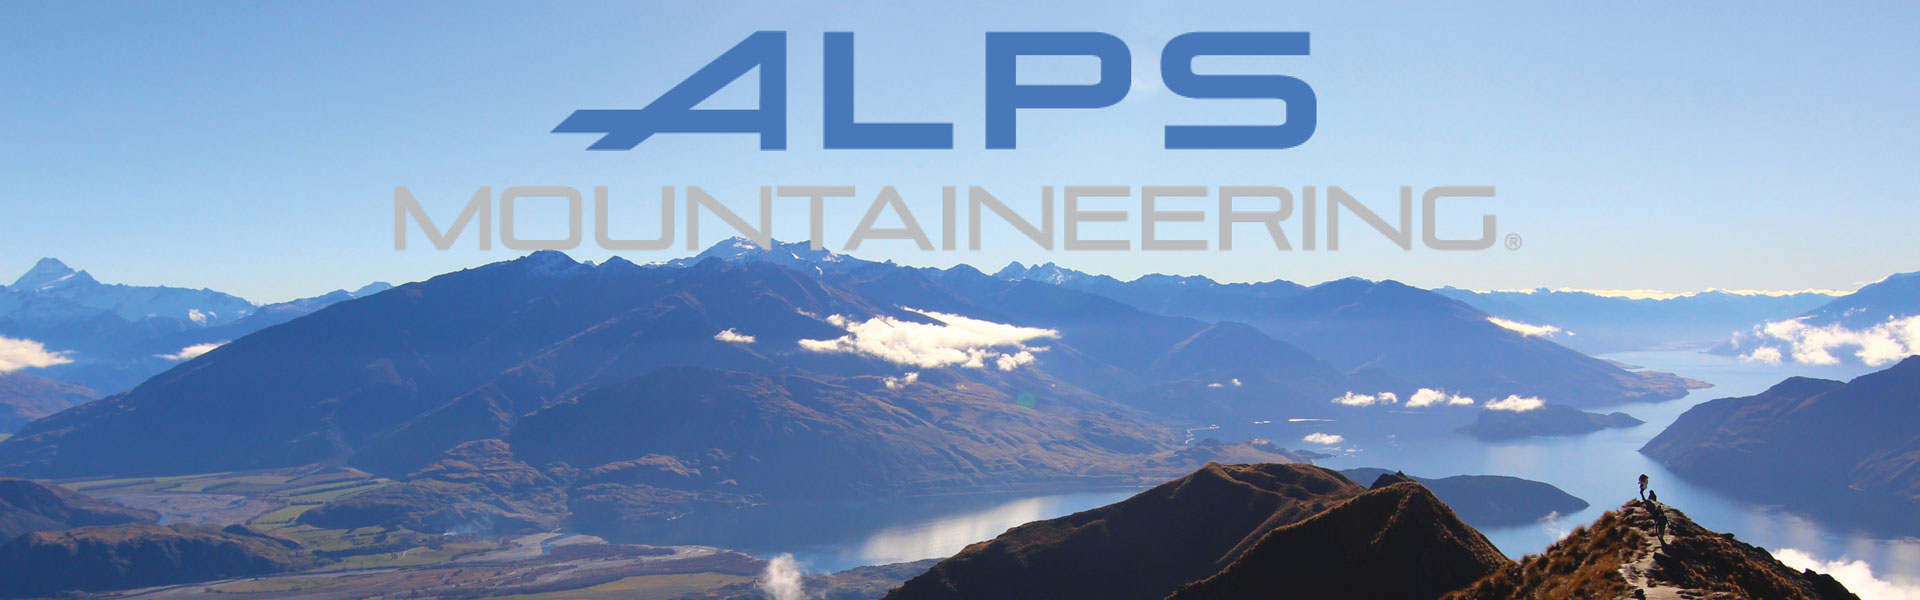 alps mountaneering logo image